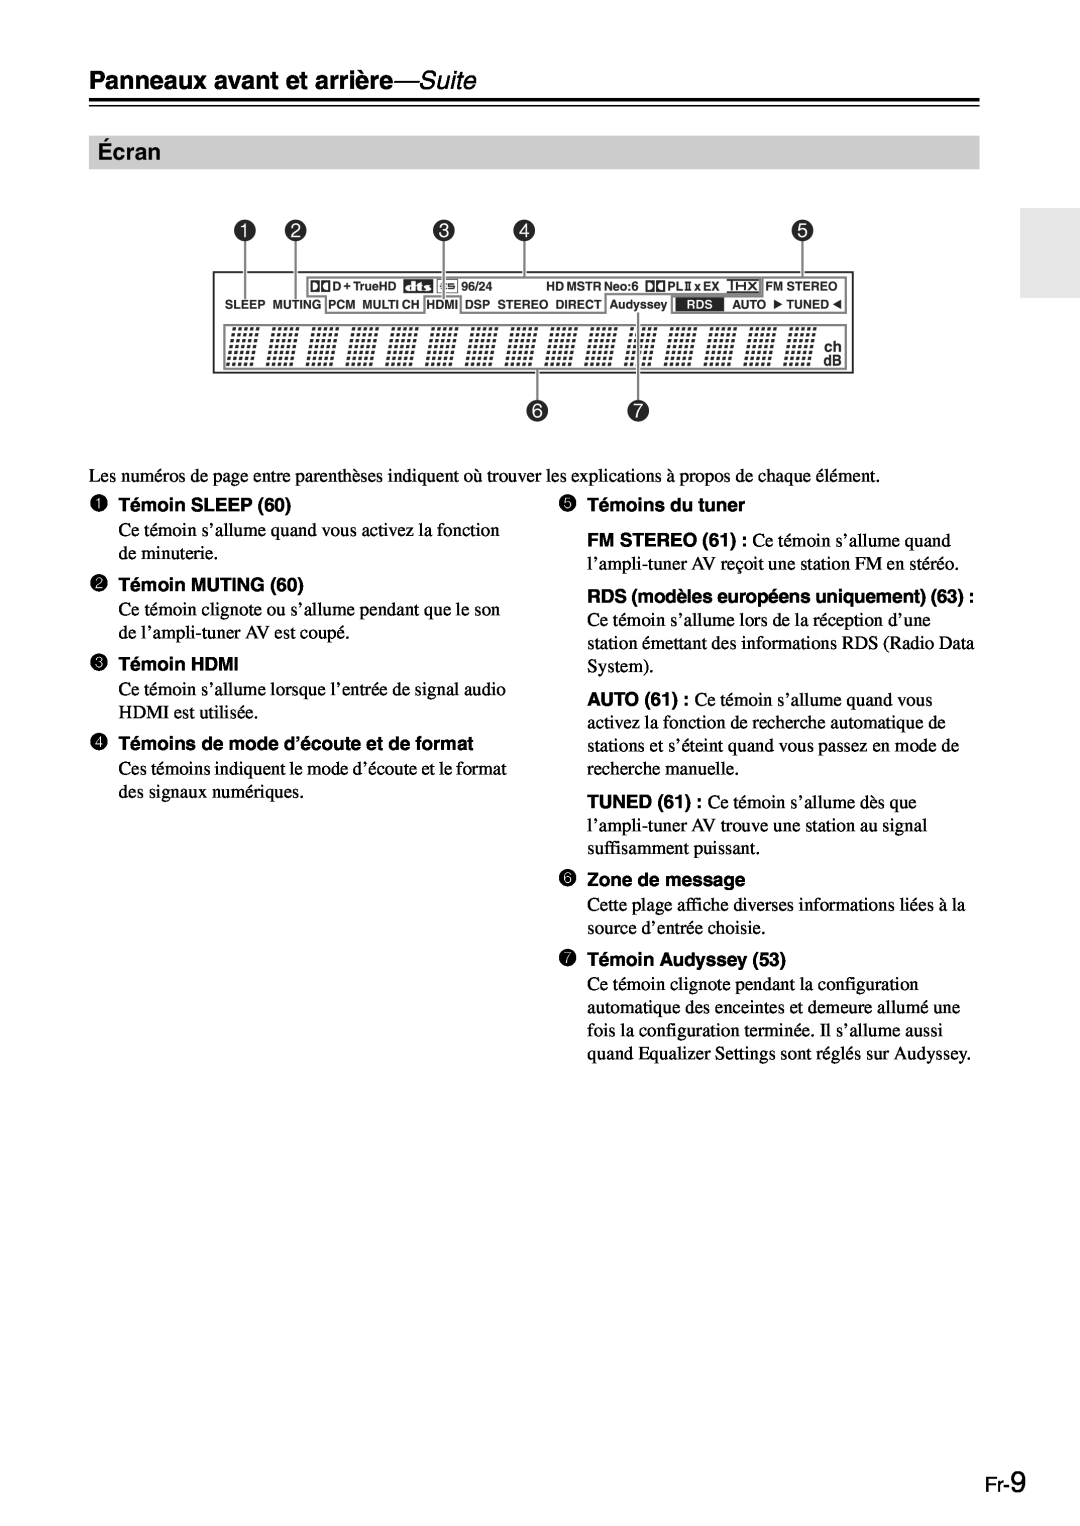 Onkyo TX-SR705 manual Écran, Fr-9, Panneaux avant et arrière-Suite 